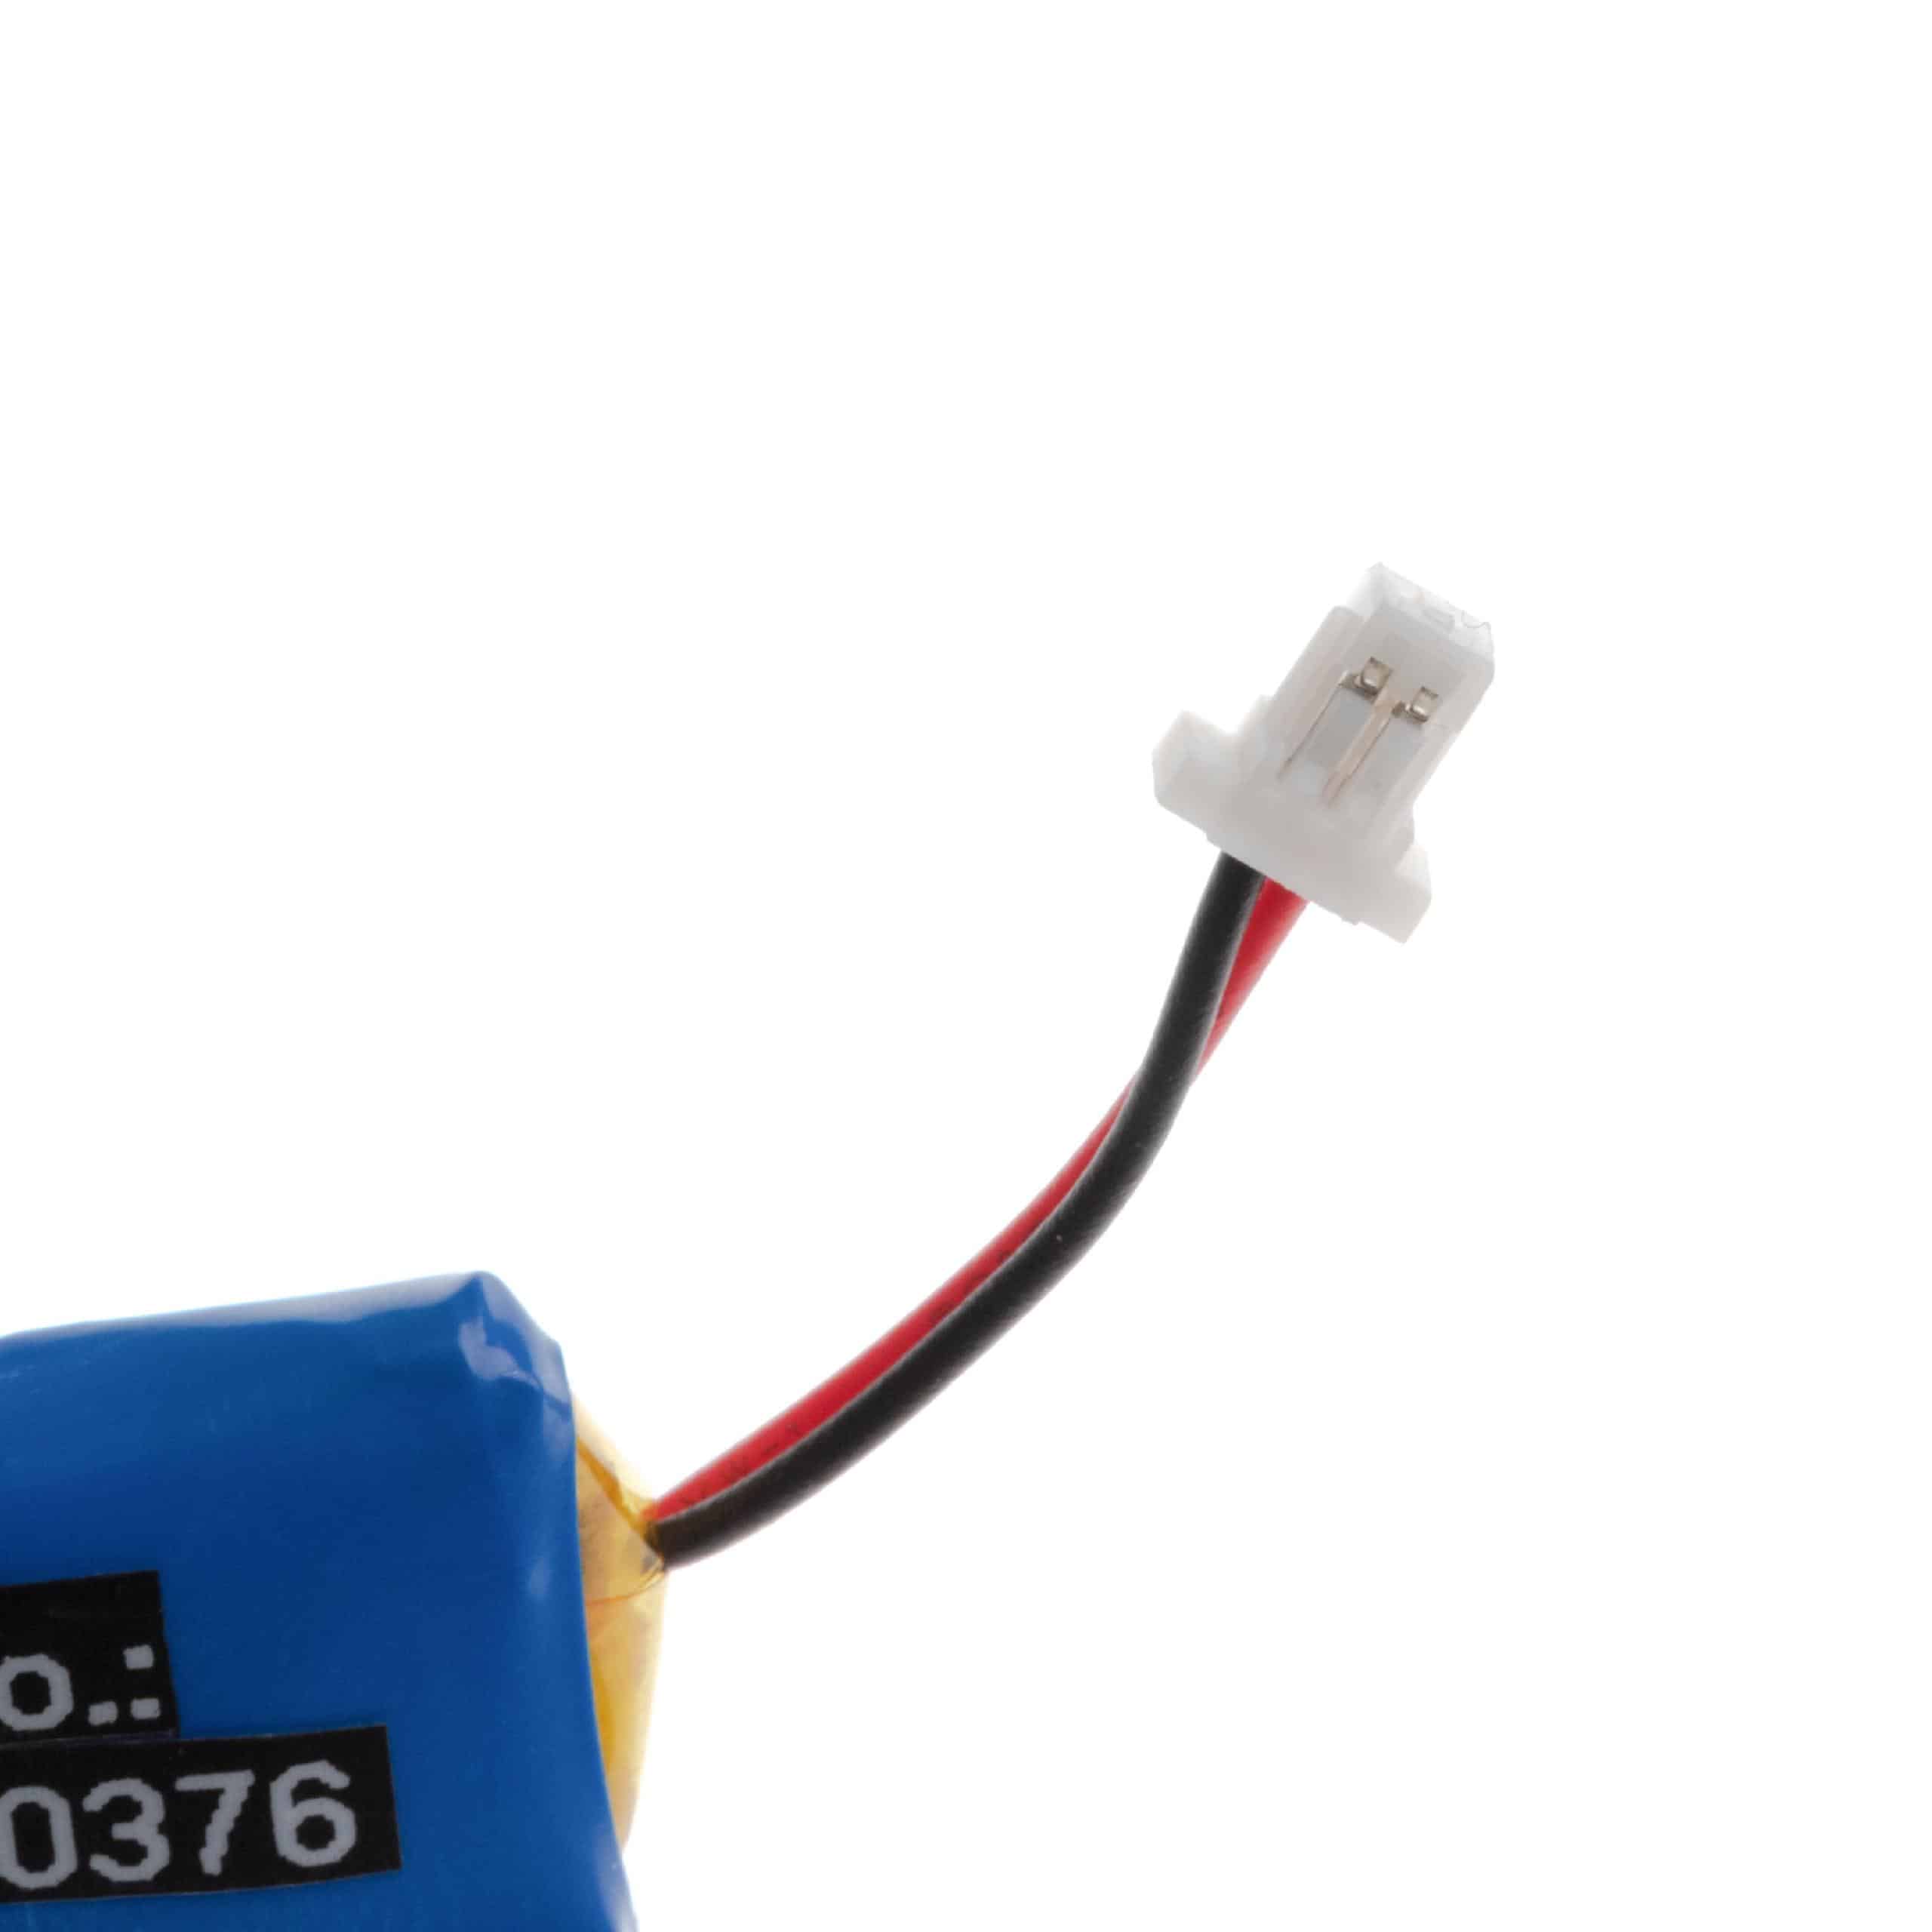 Batterie remplace Plantronics 84479-01, 86180-01 pour casque audio - 110mAh 3,7V Li-polymère